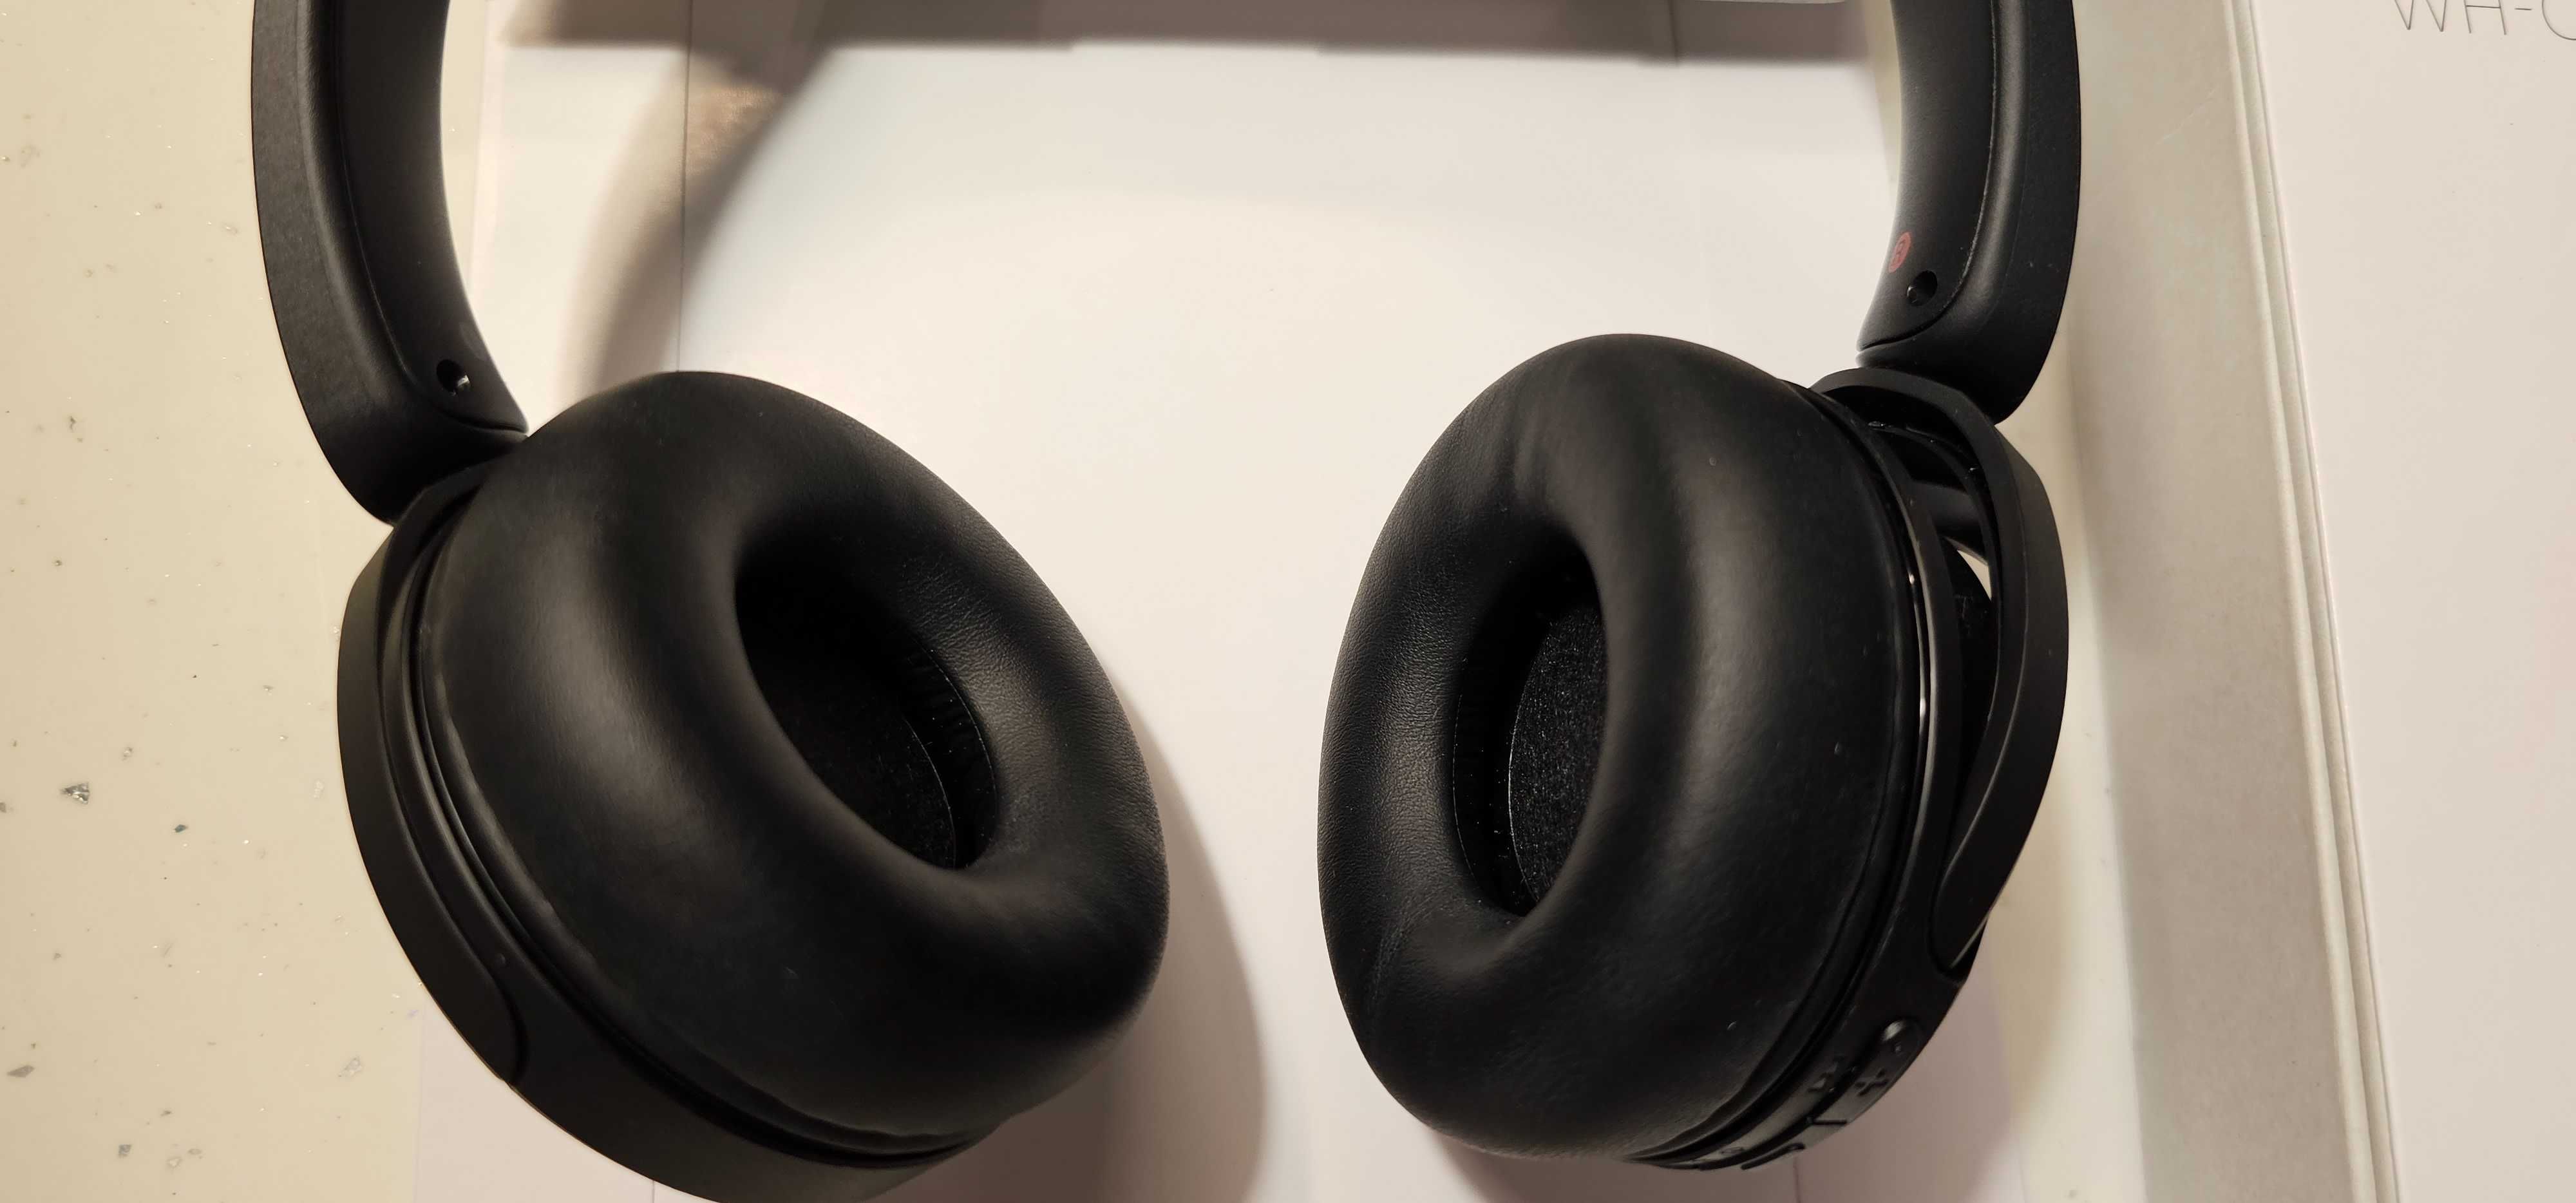 Słuchawki bezprzewodowe nauszne Sony WH-CH520